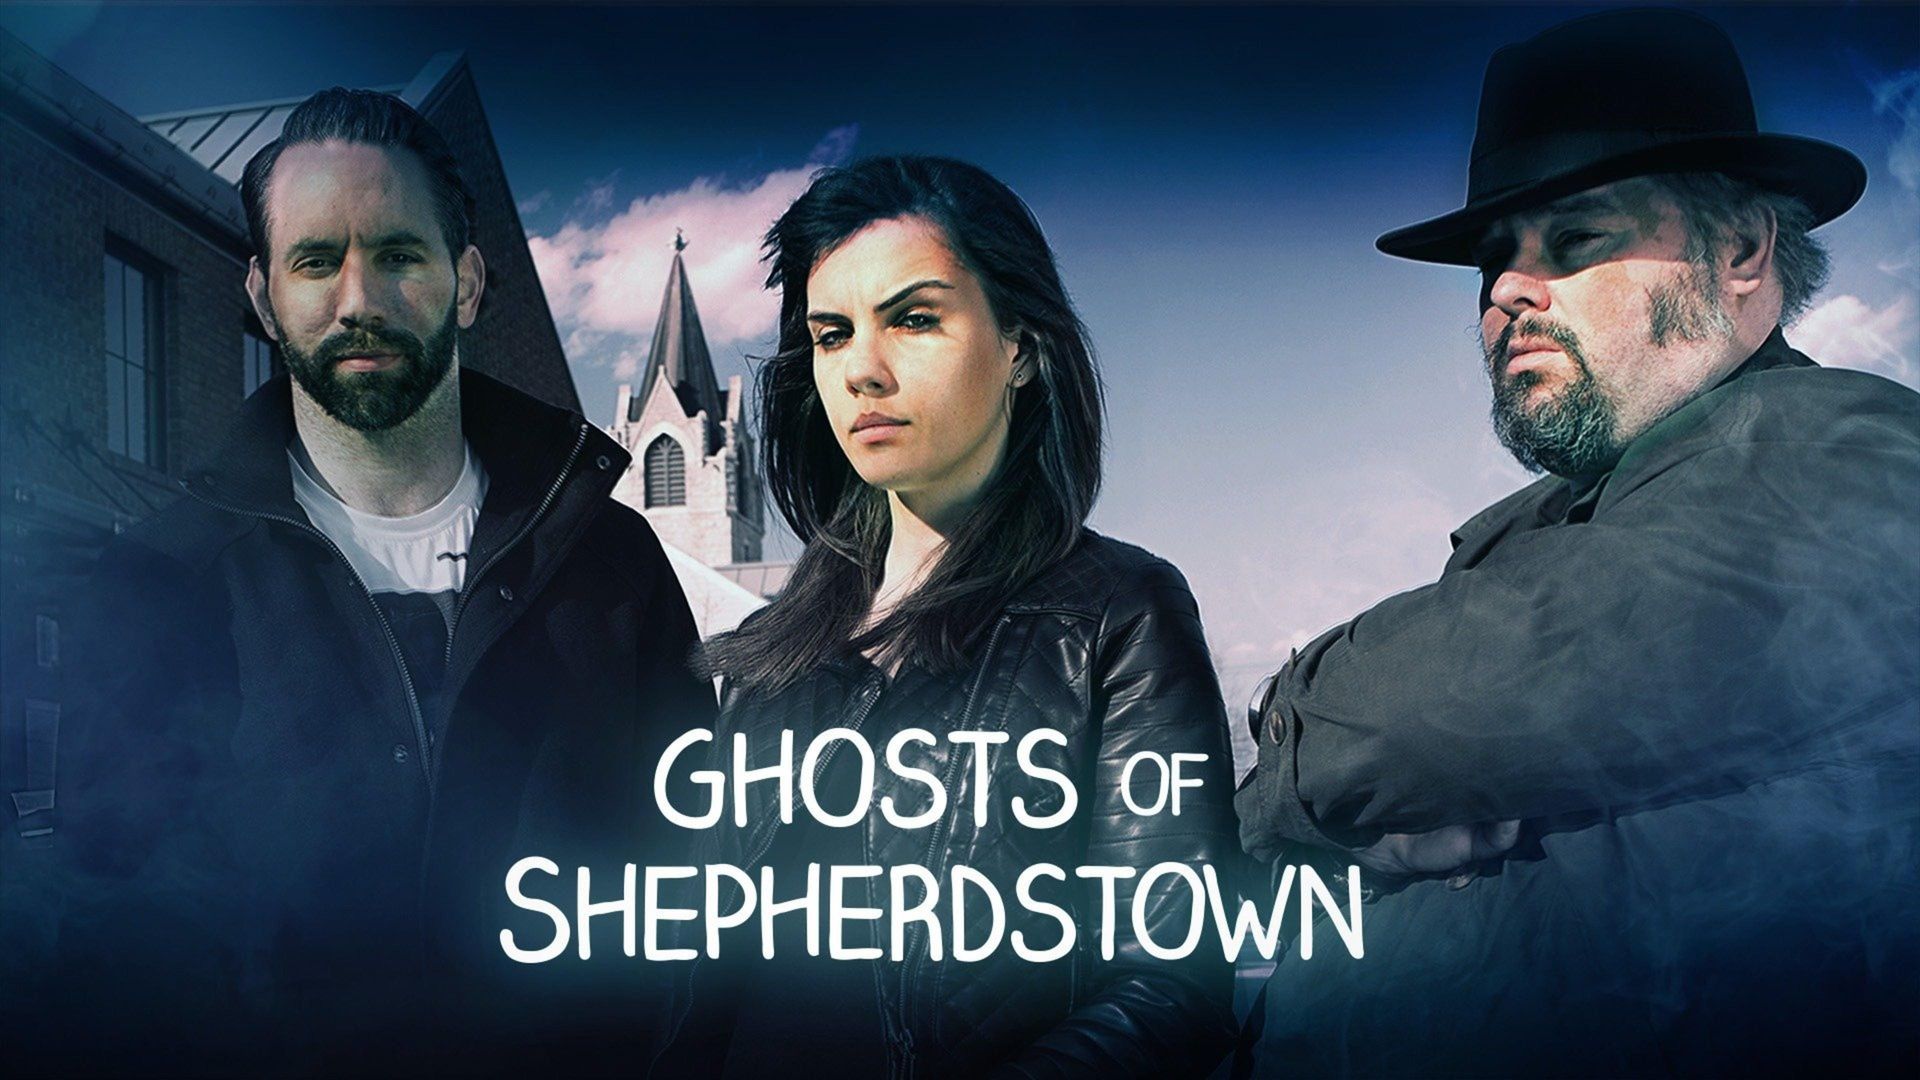 Ghosts of Shepherdstown background